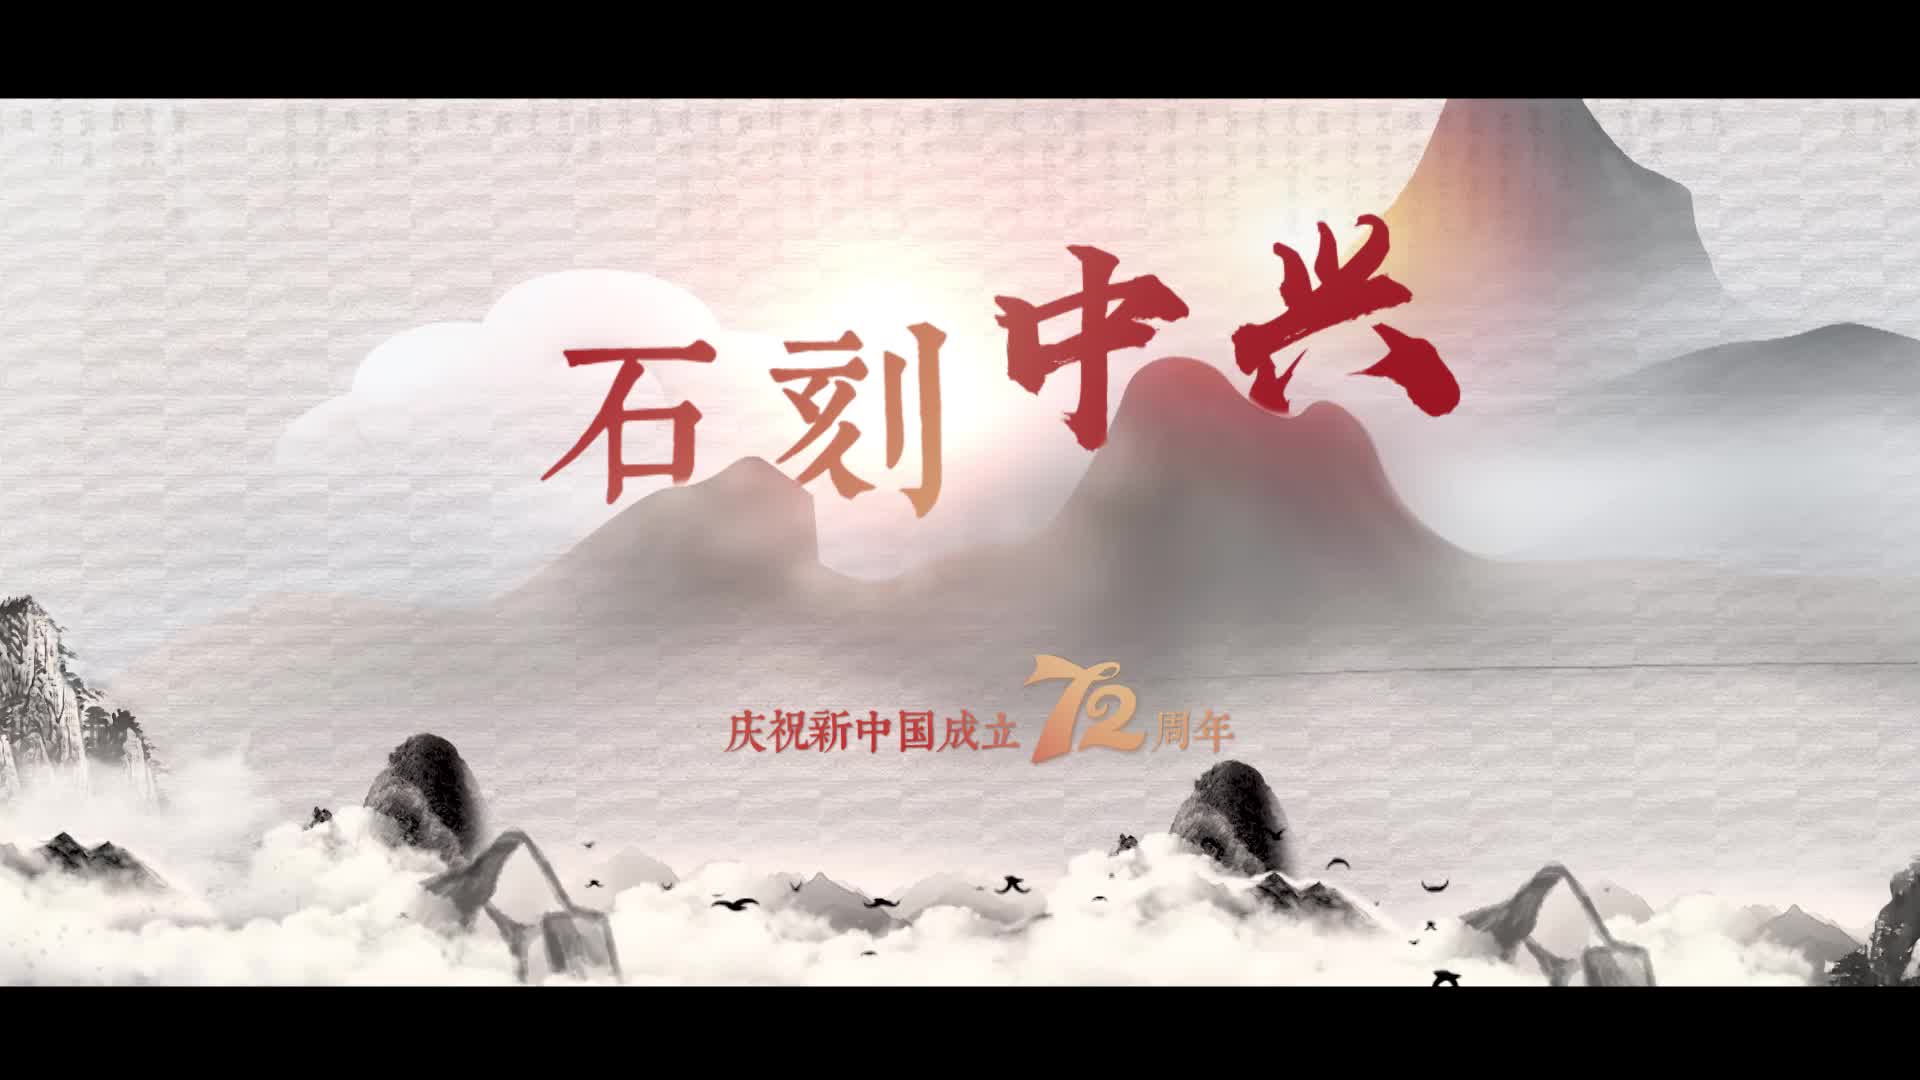 《石刻中兴》——庆祝新中国成立72周年